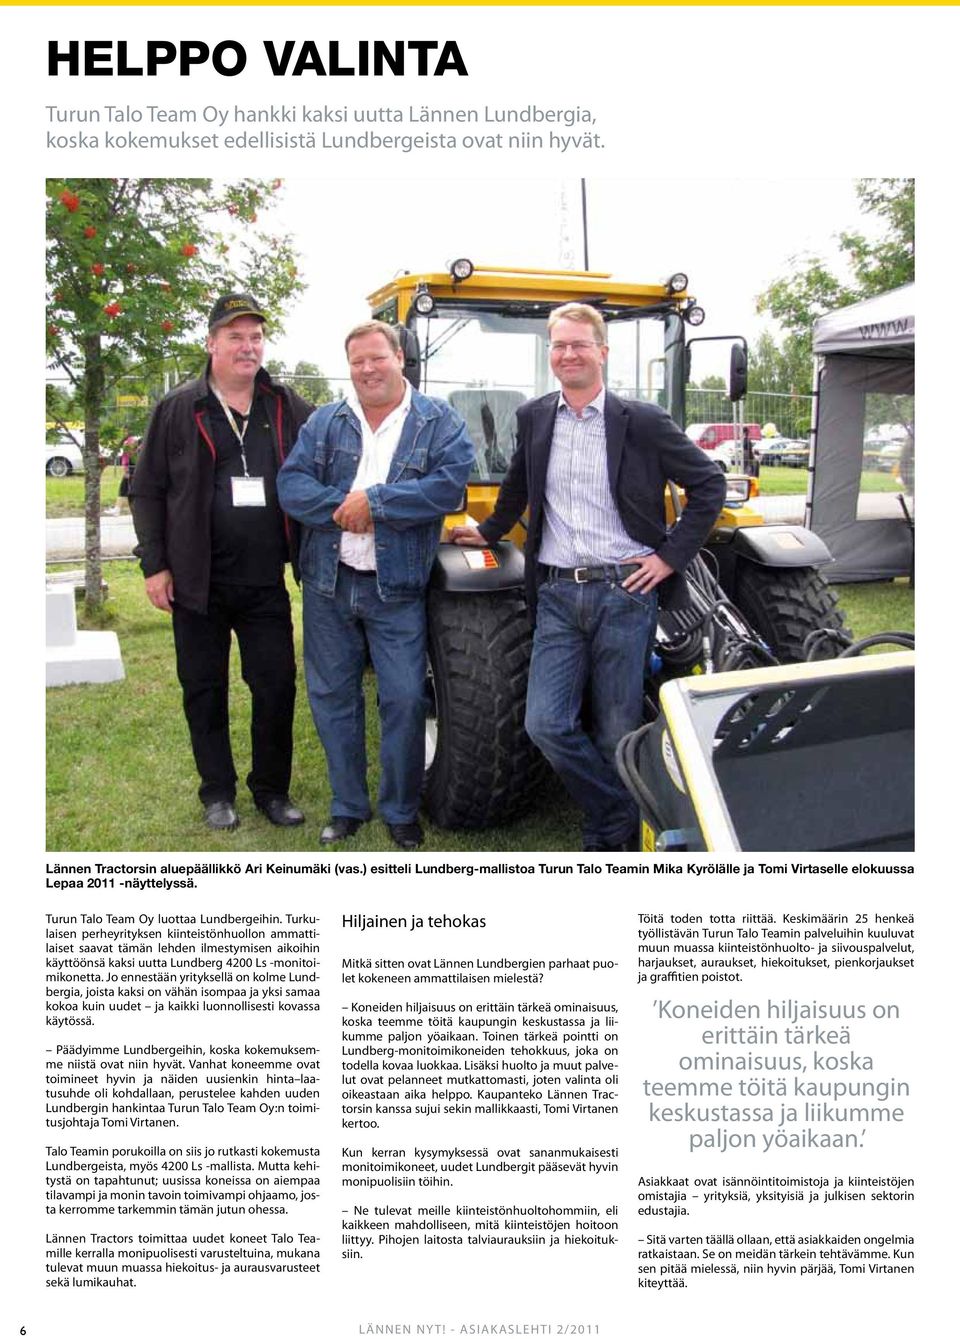 Turkulaisen perheyrityksen kiinteistönhuollon ammattilaiset saavat tämän lehden ilmestymisen aikoihin käyttöönsä kaksi uutta Lundberg 4200 Ls -monitoimikonetta.